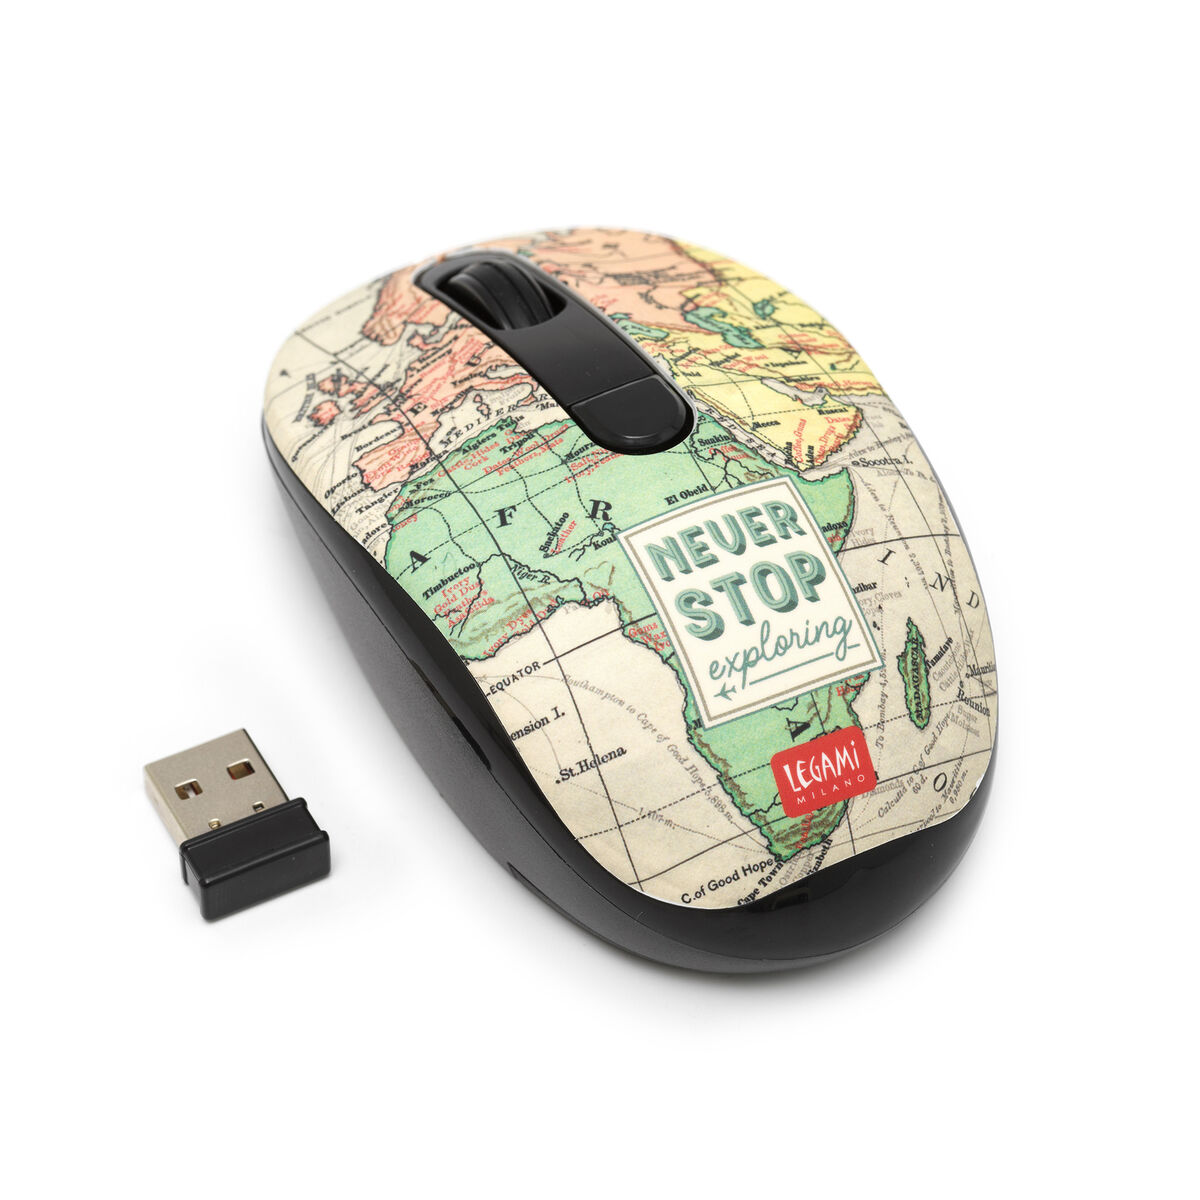 Kabellose Maus mit USB-Empfänger, , zoo